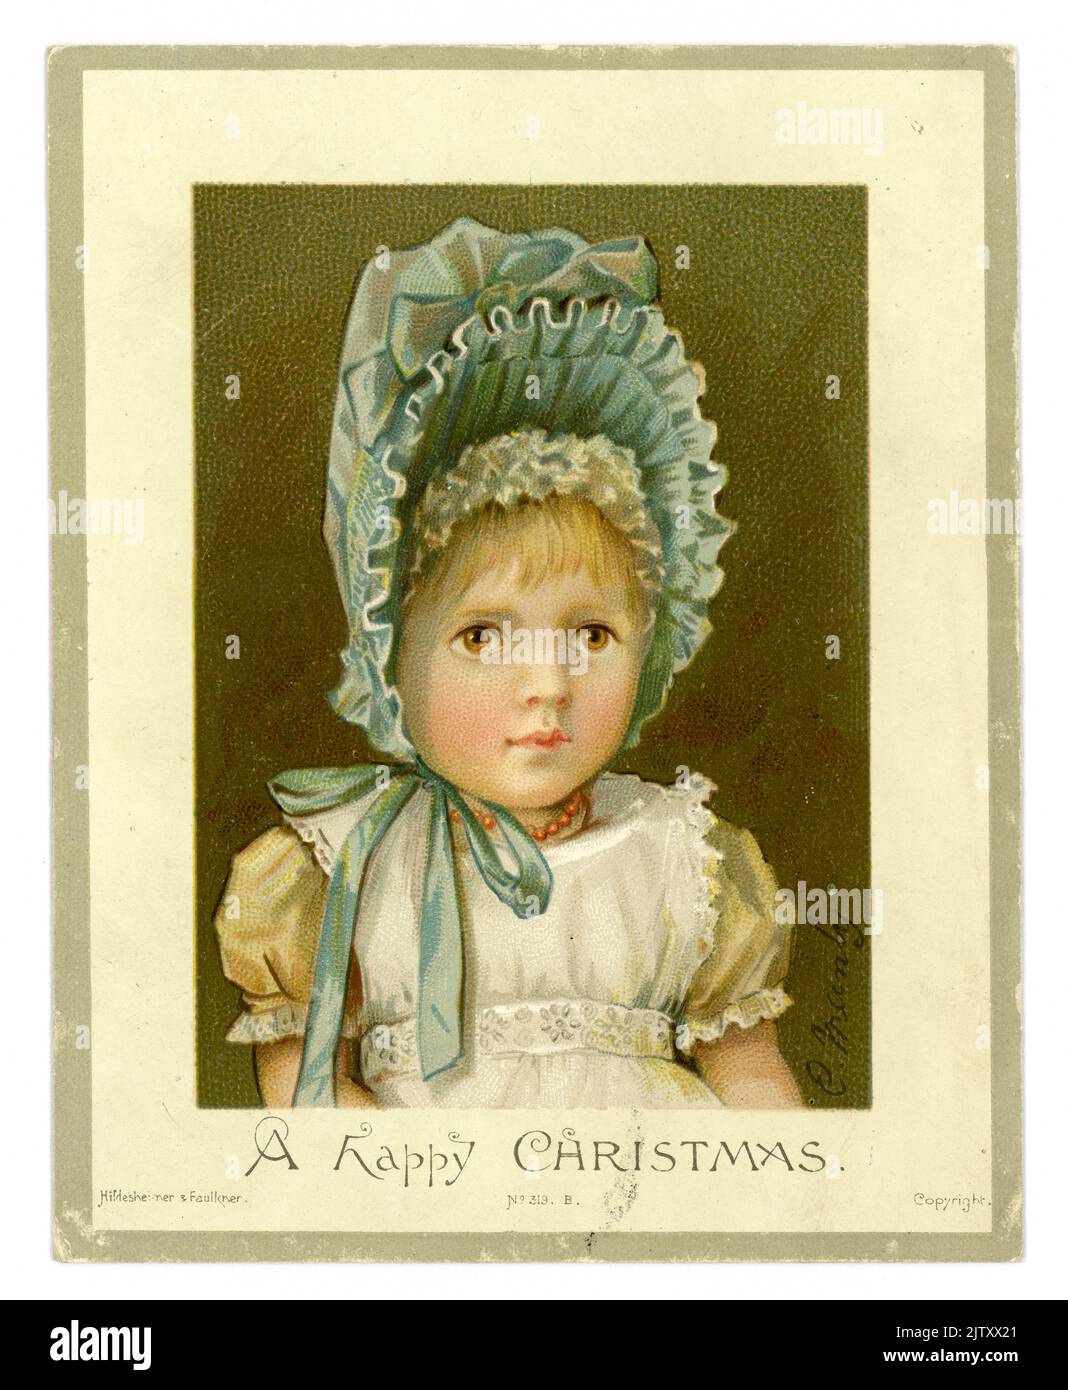 Bezaubernde originale viktorianische Weihnachtsgrüßkarte mit süßem ernstlich aussehendem jungen viktorianischen Mädchen, ihr Gesicht von einer großen blassblauen Mütze eingerahmt. Diese Karte wurde von Hildesheimer und Faulkner veröffentlicht. Datum Xmas 1886. Stockfoto